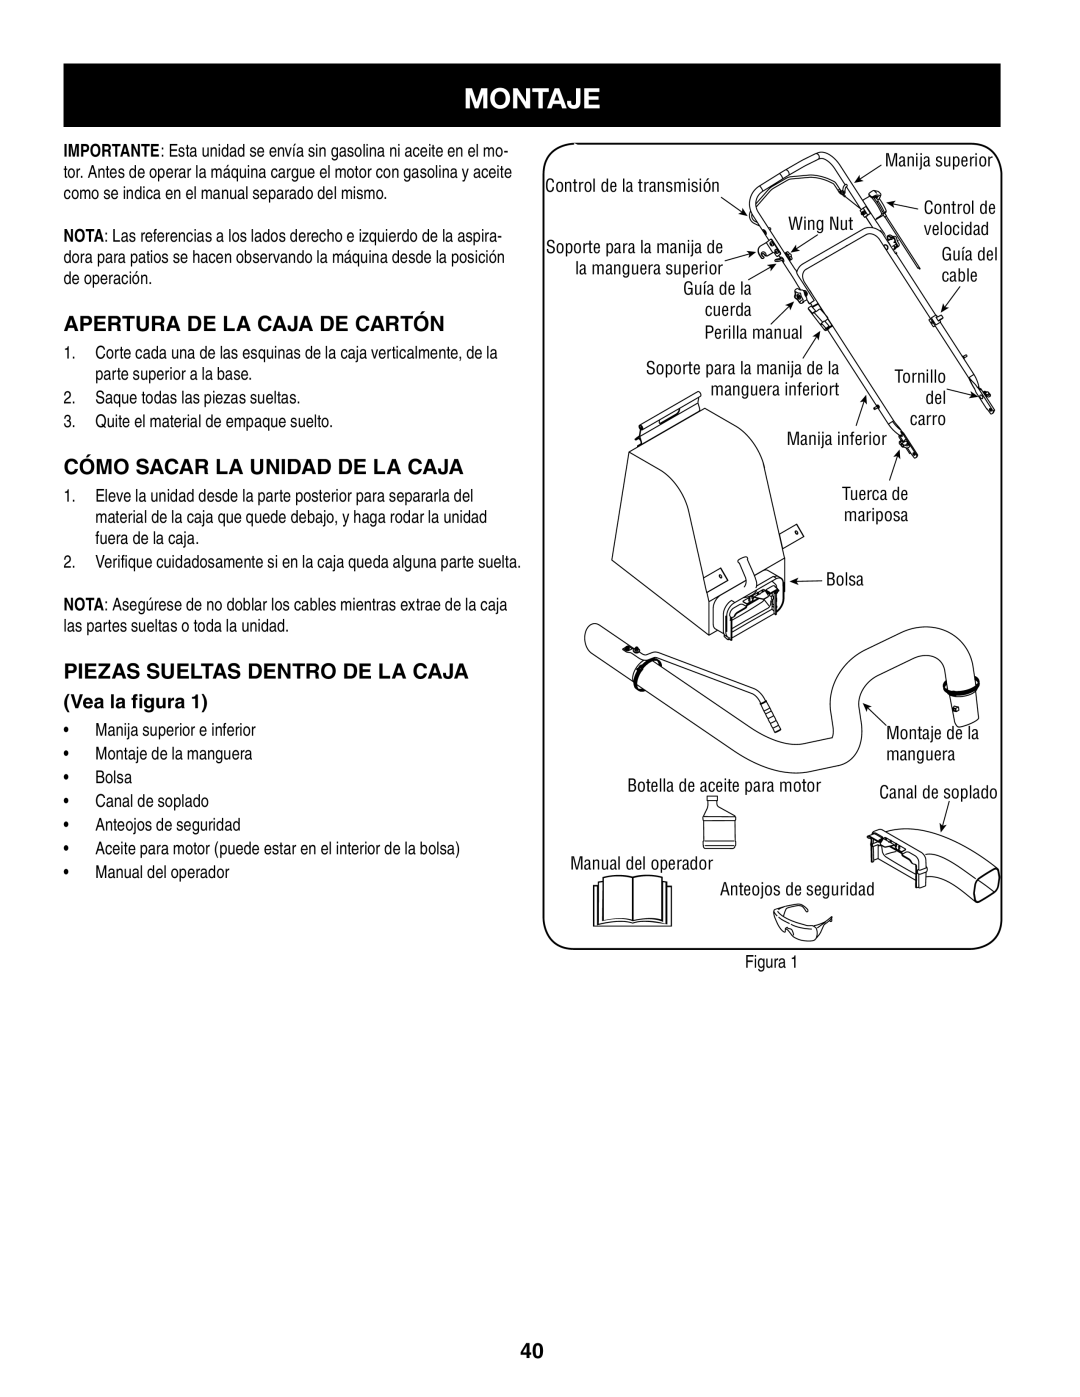 Craftsman 247.77013.0 manual Montaje, Apertura De La Caja De Cartón, Cómo Sacar La Unidad De La Caja, Vea la figura 